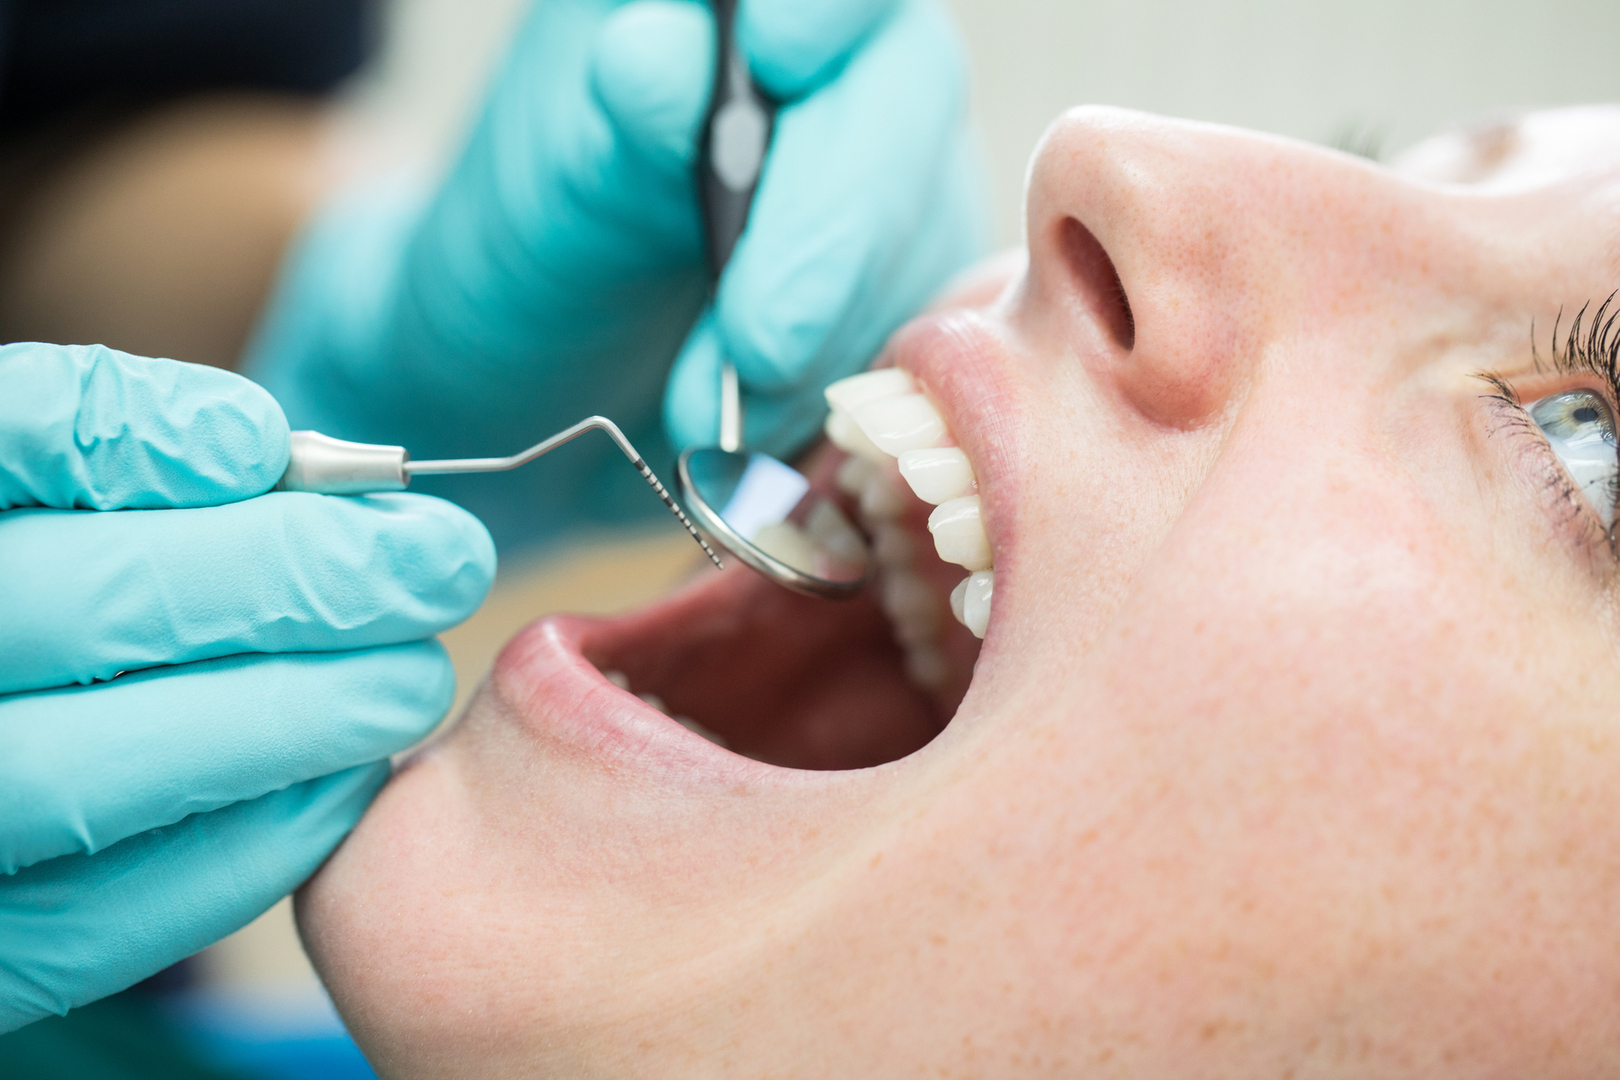 طبيب يكشف عن 5 حالات صحية خطيرة يمكن اكتشافها من الفم ولا علاقة لها بالأسنان